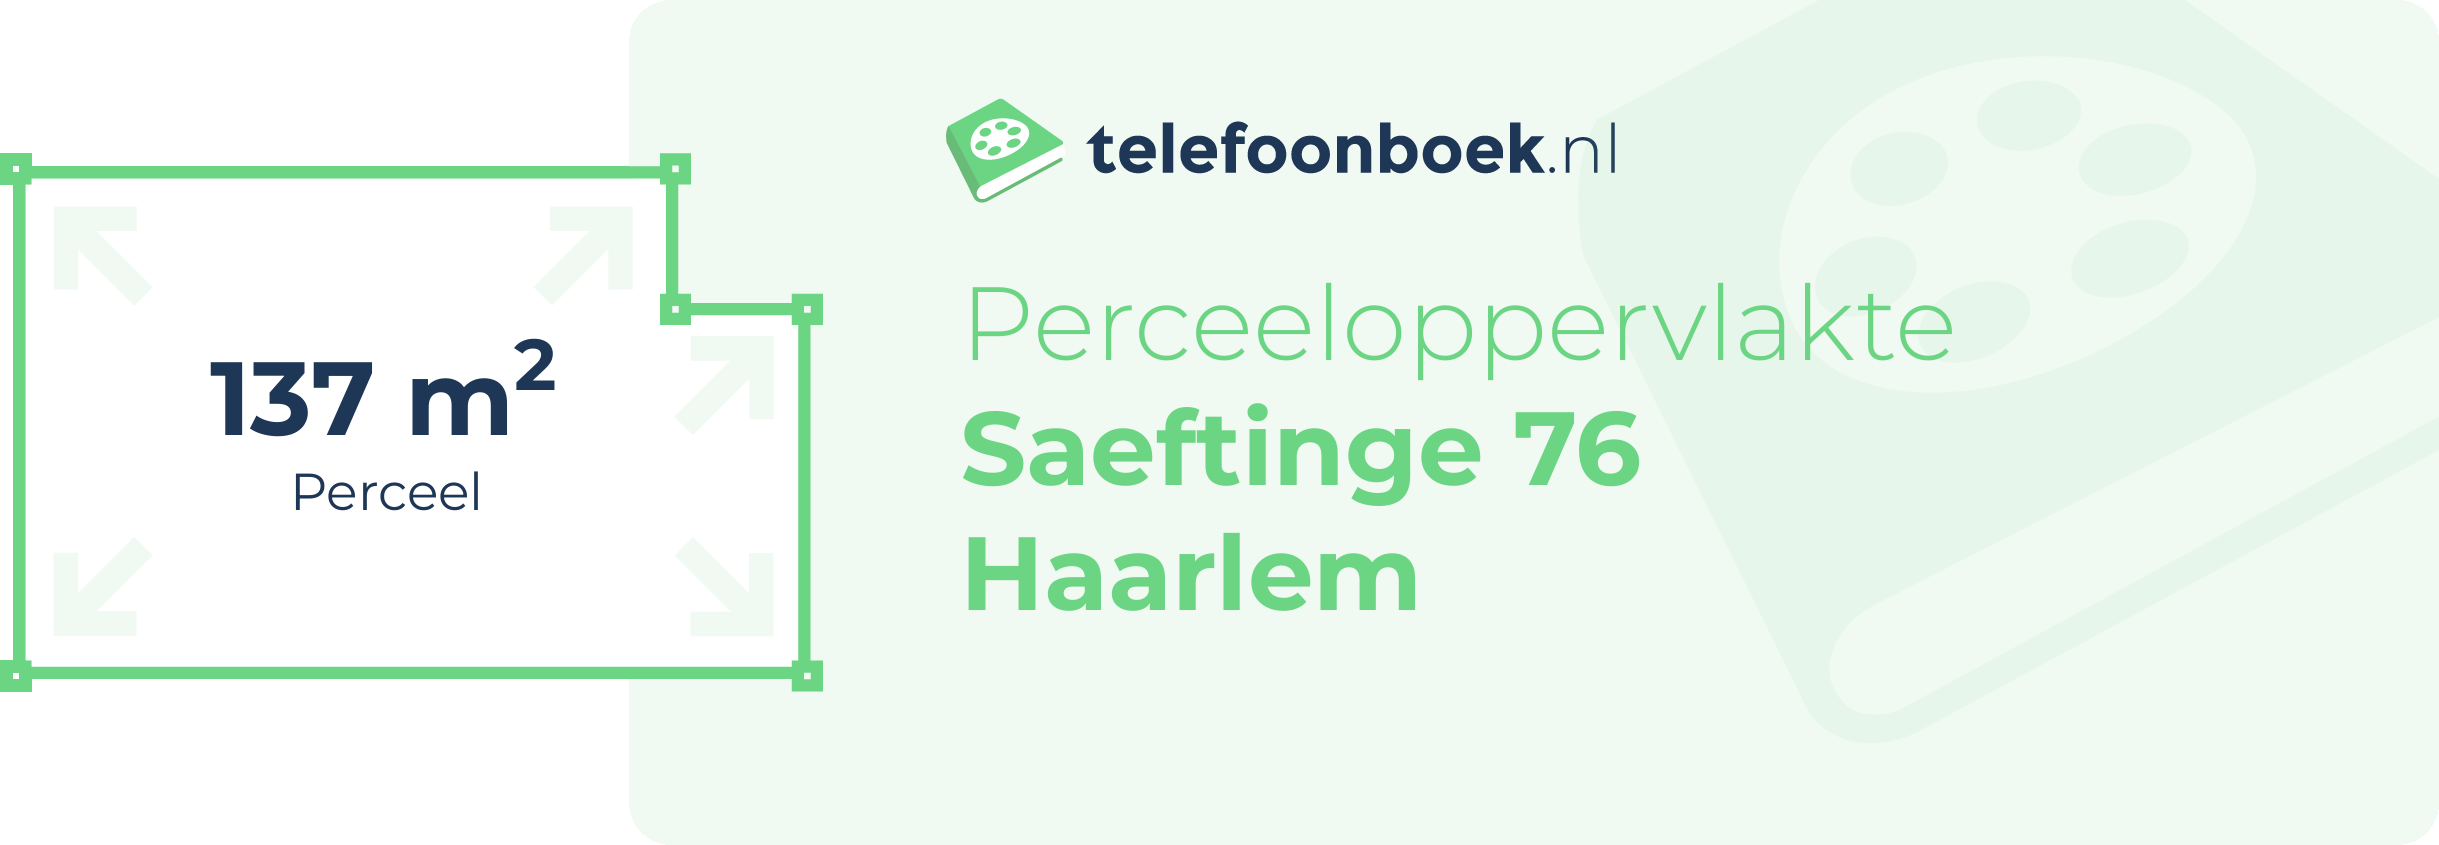 Perceeloppervlakte Saeftinge 76 Haarlem